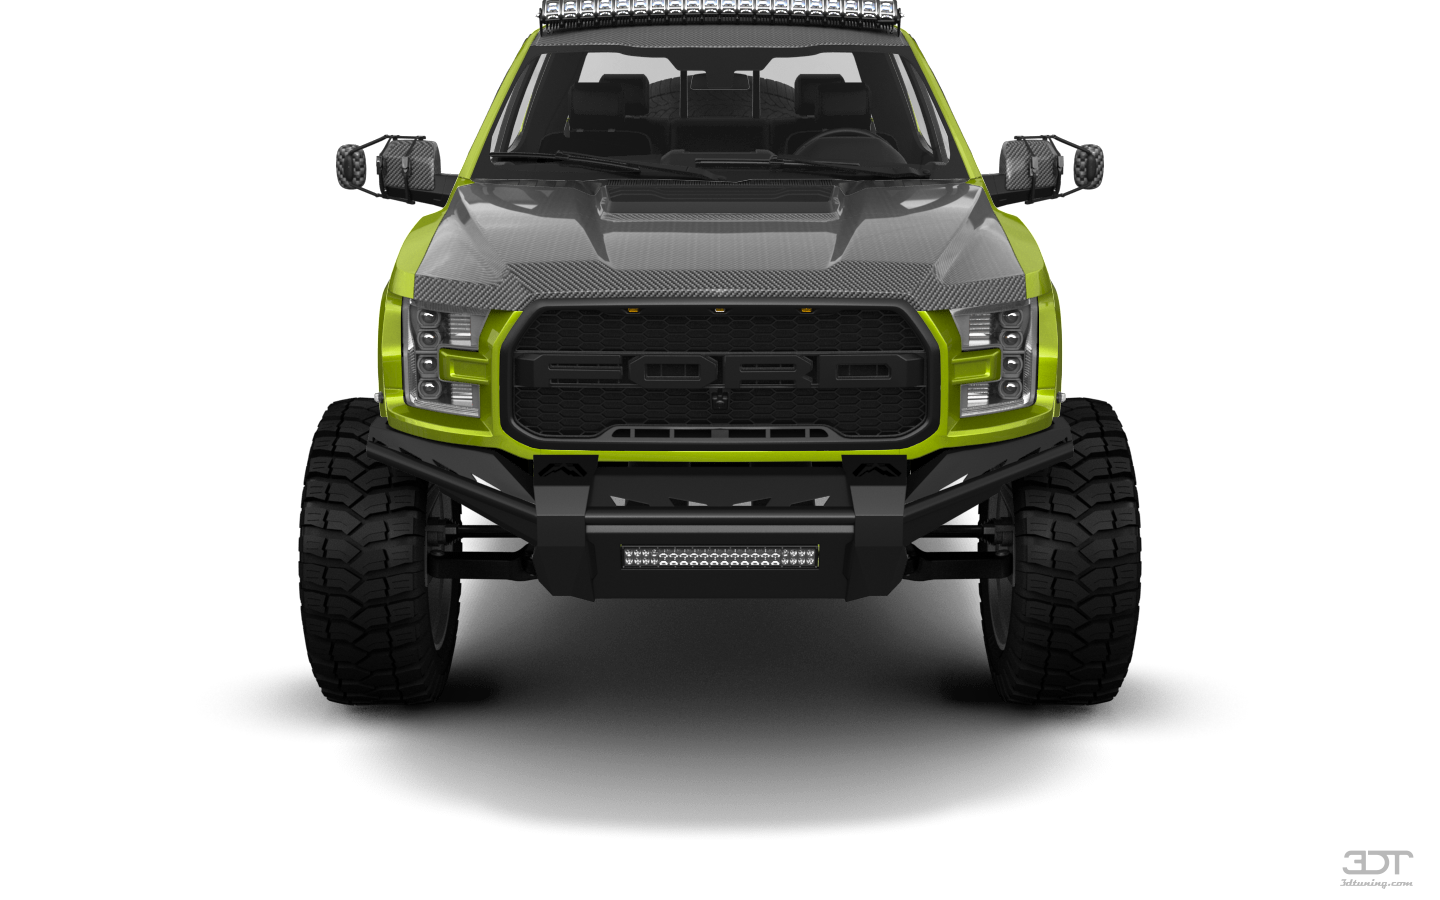 Ford F-150 Raptor 4 Door pickup truck 2017